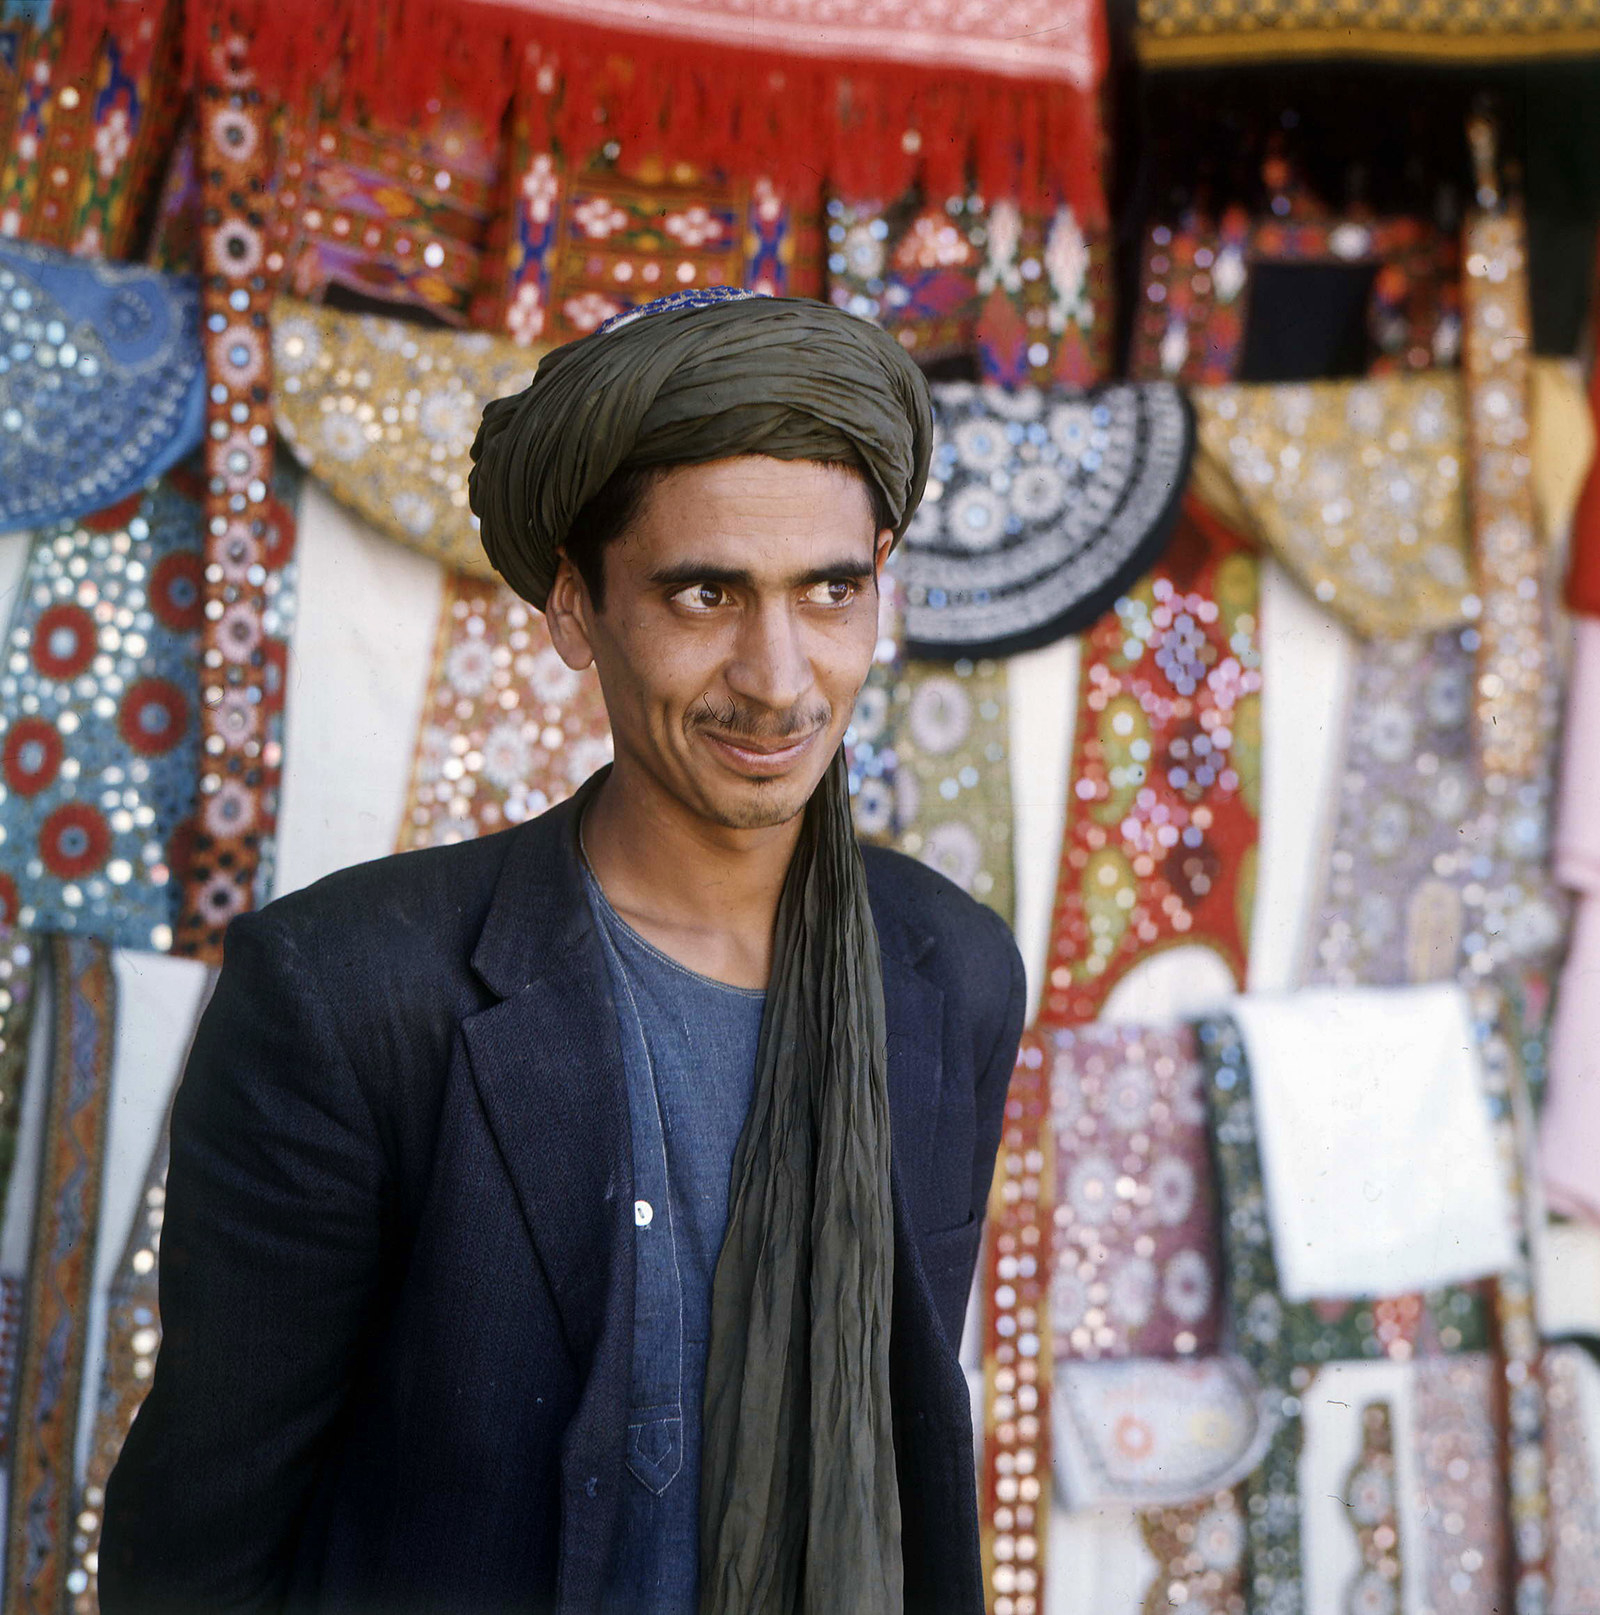 Торговец на рынке позирует для портрета, 1970